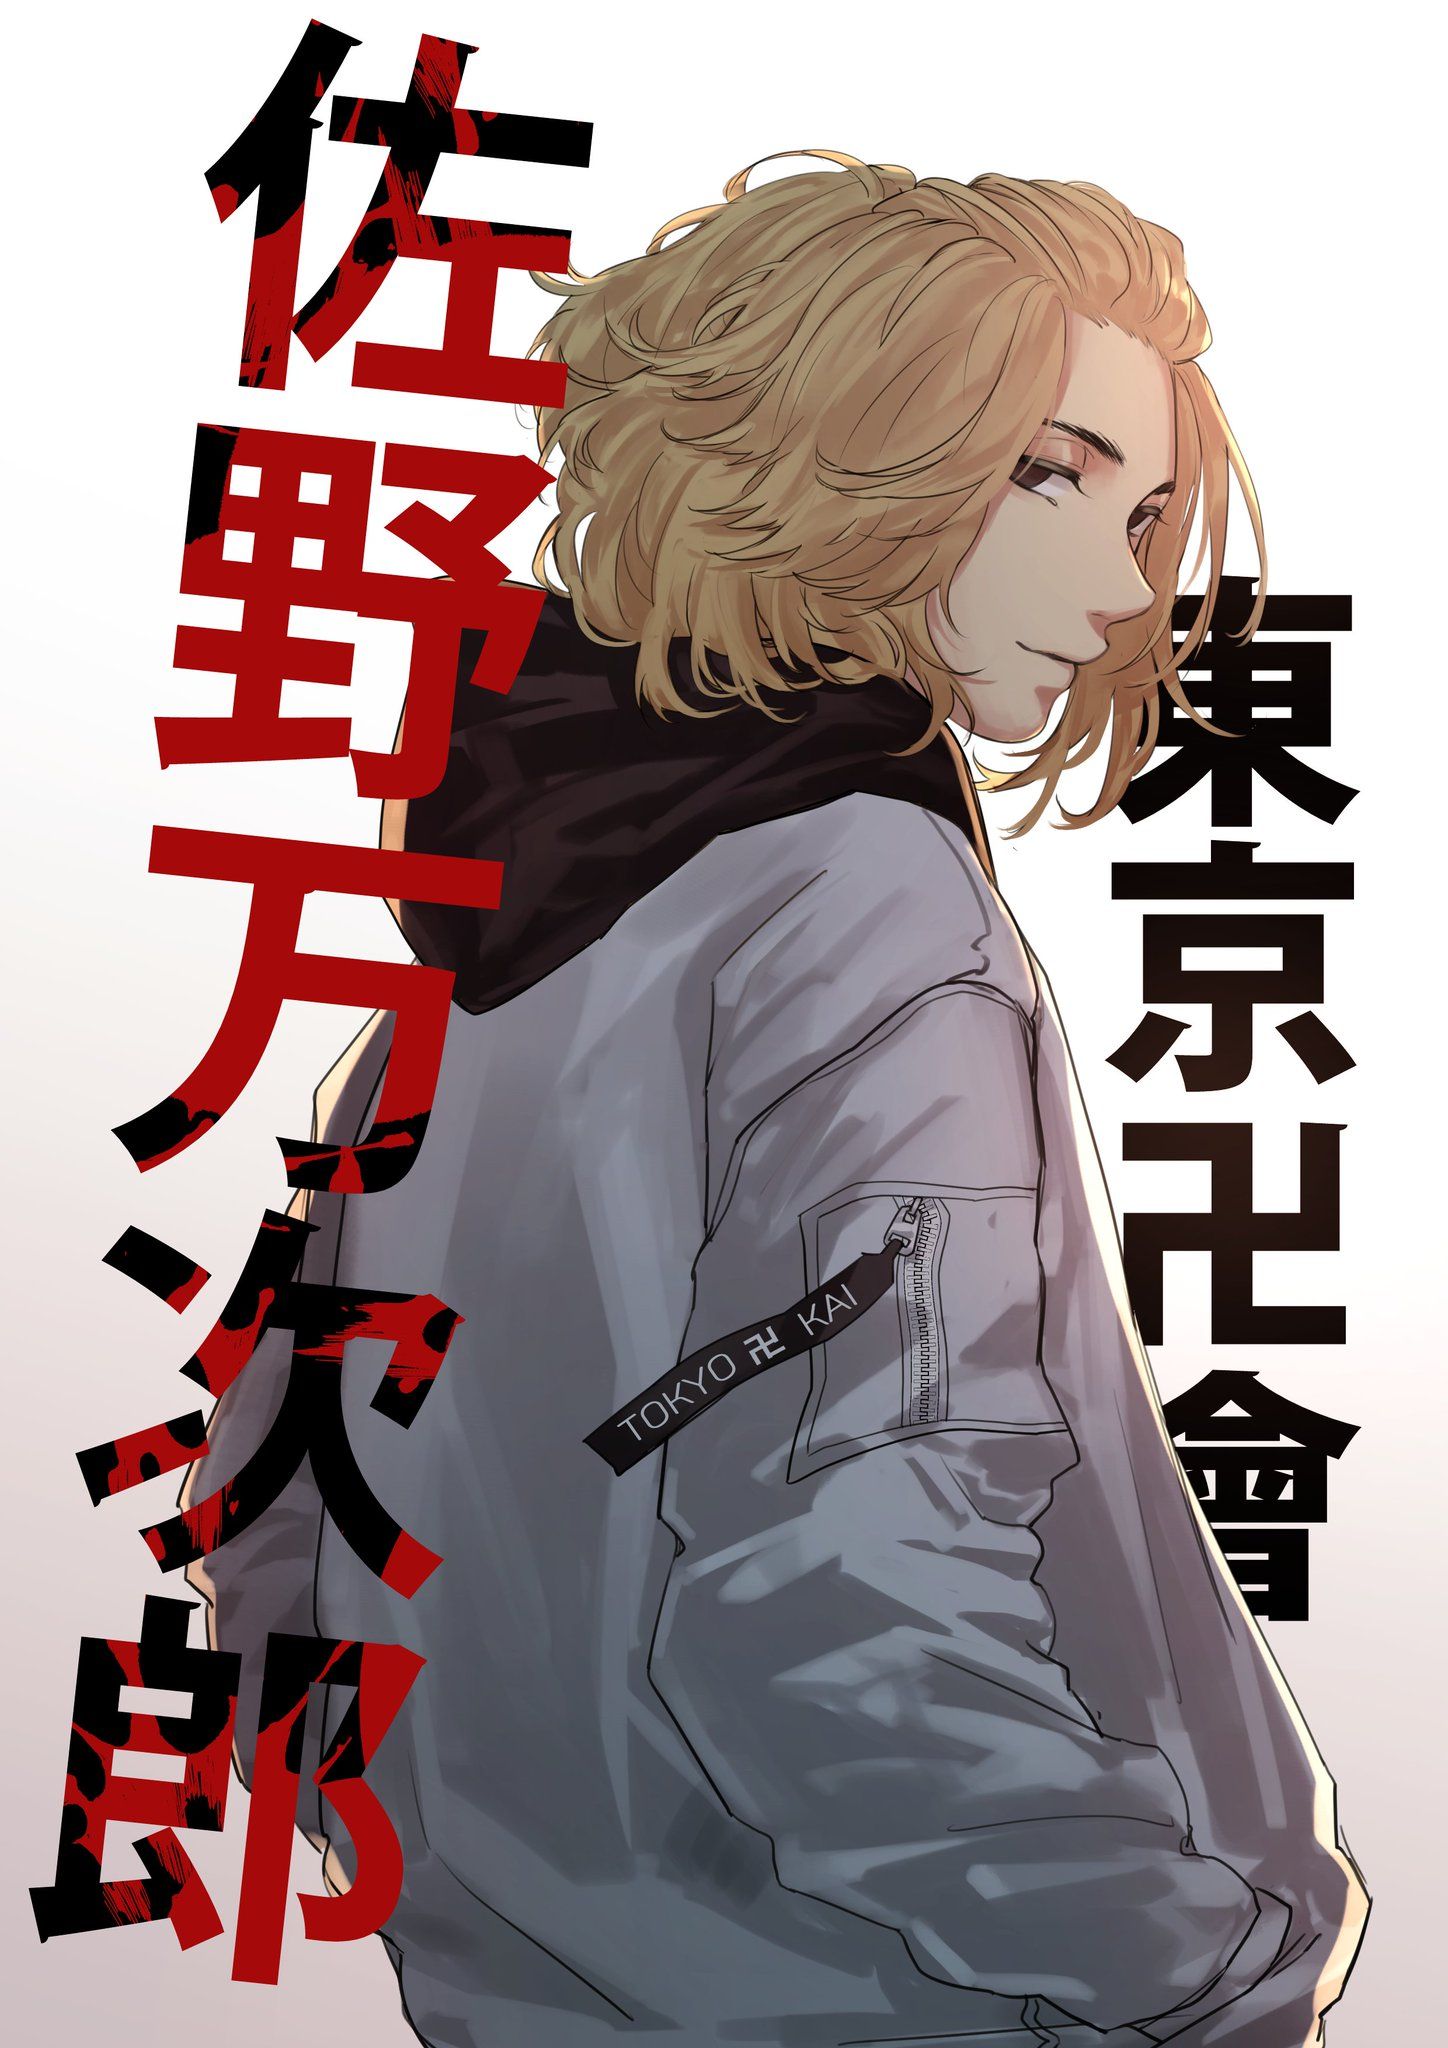 Được chế tác từ bộ manga và anime đình đám, poster Tokyo Revenger là một cách thể hiện tình yêu với bộ truyện tranh tuyệt vời này. Với các nhân vật anime ấn tượng và những cảnh quan độc đáo, poster này chắc chắn sẽ thu hút mọi sự chú ý.